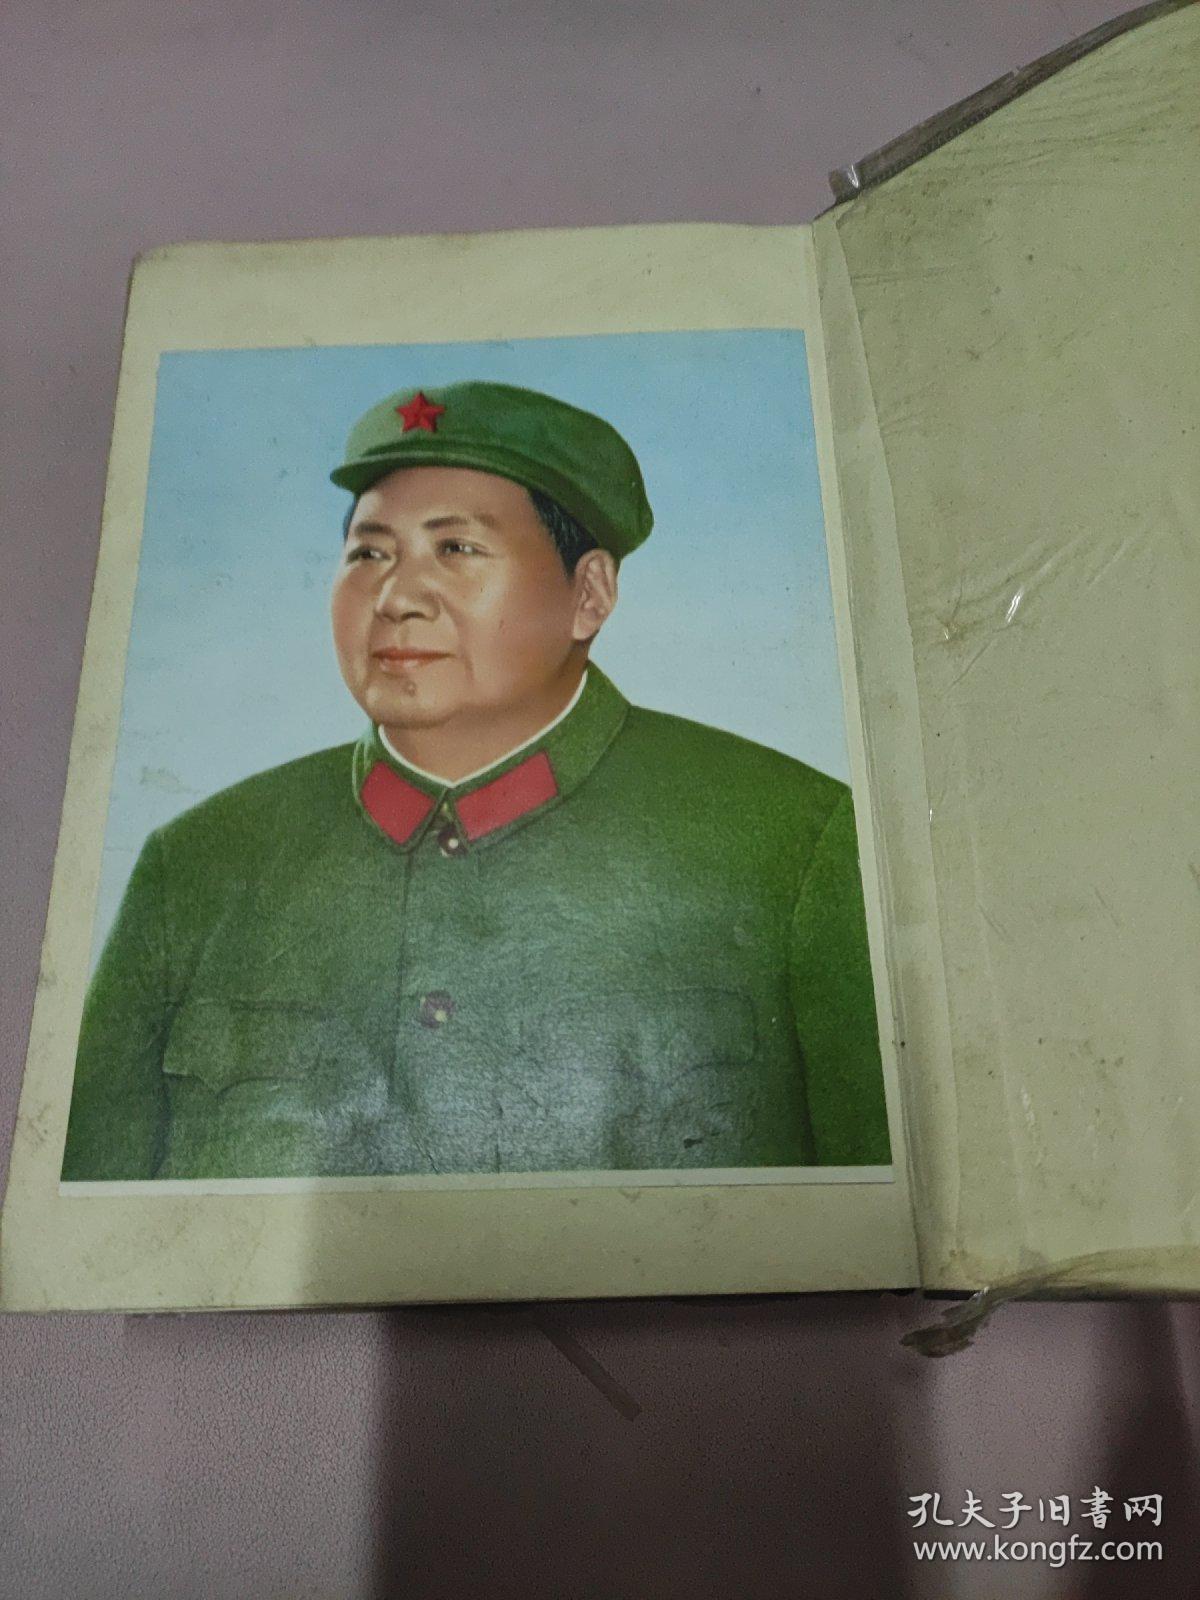 毛泽东选集（一卷本）繁体竖版32开 上海1966年1版1印